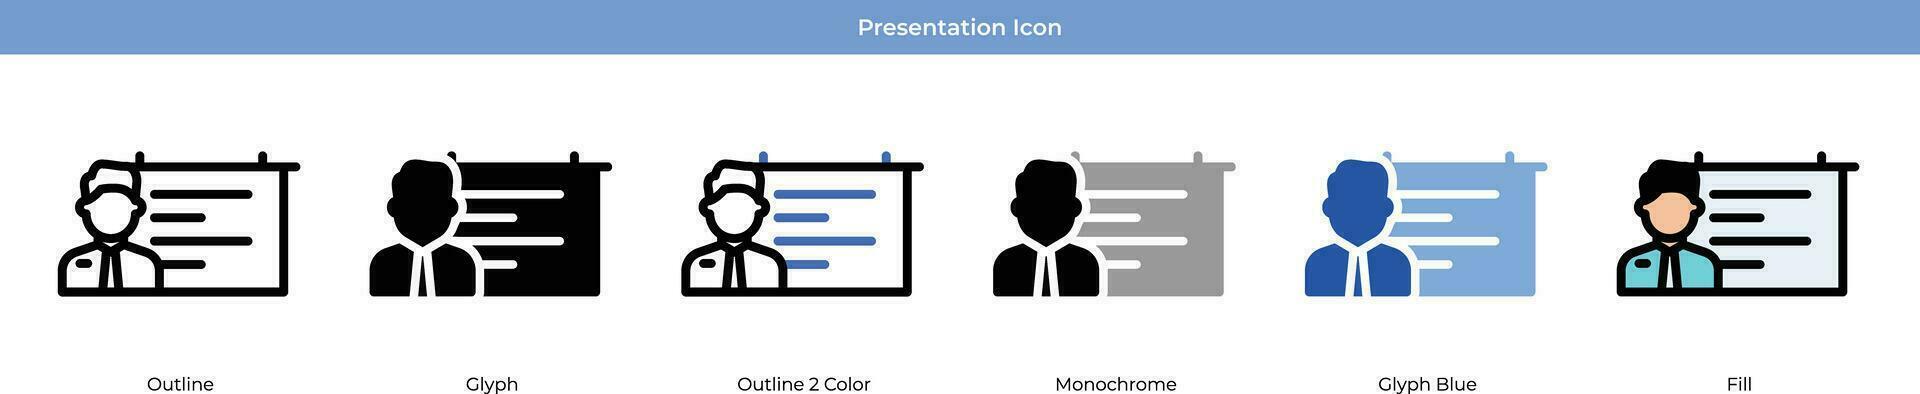 Presentation Icon Set vector